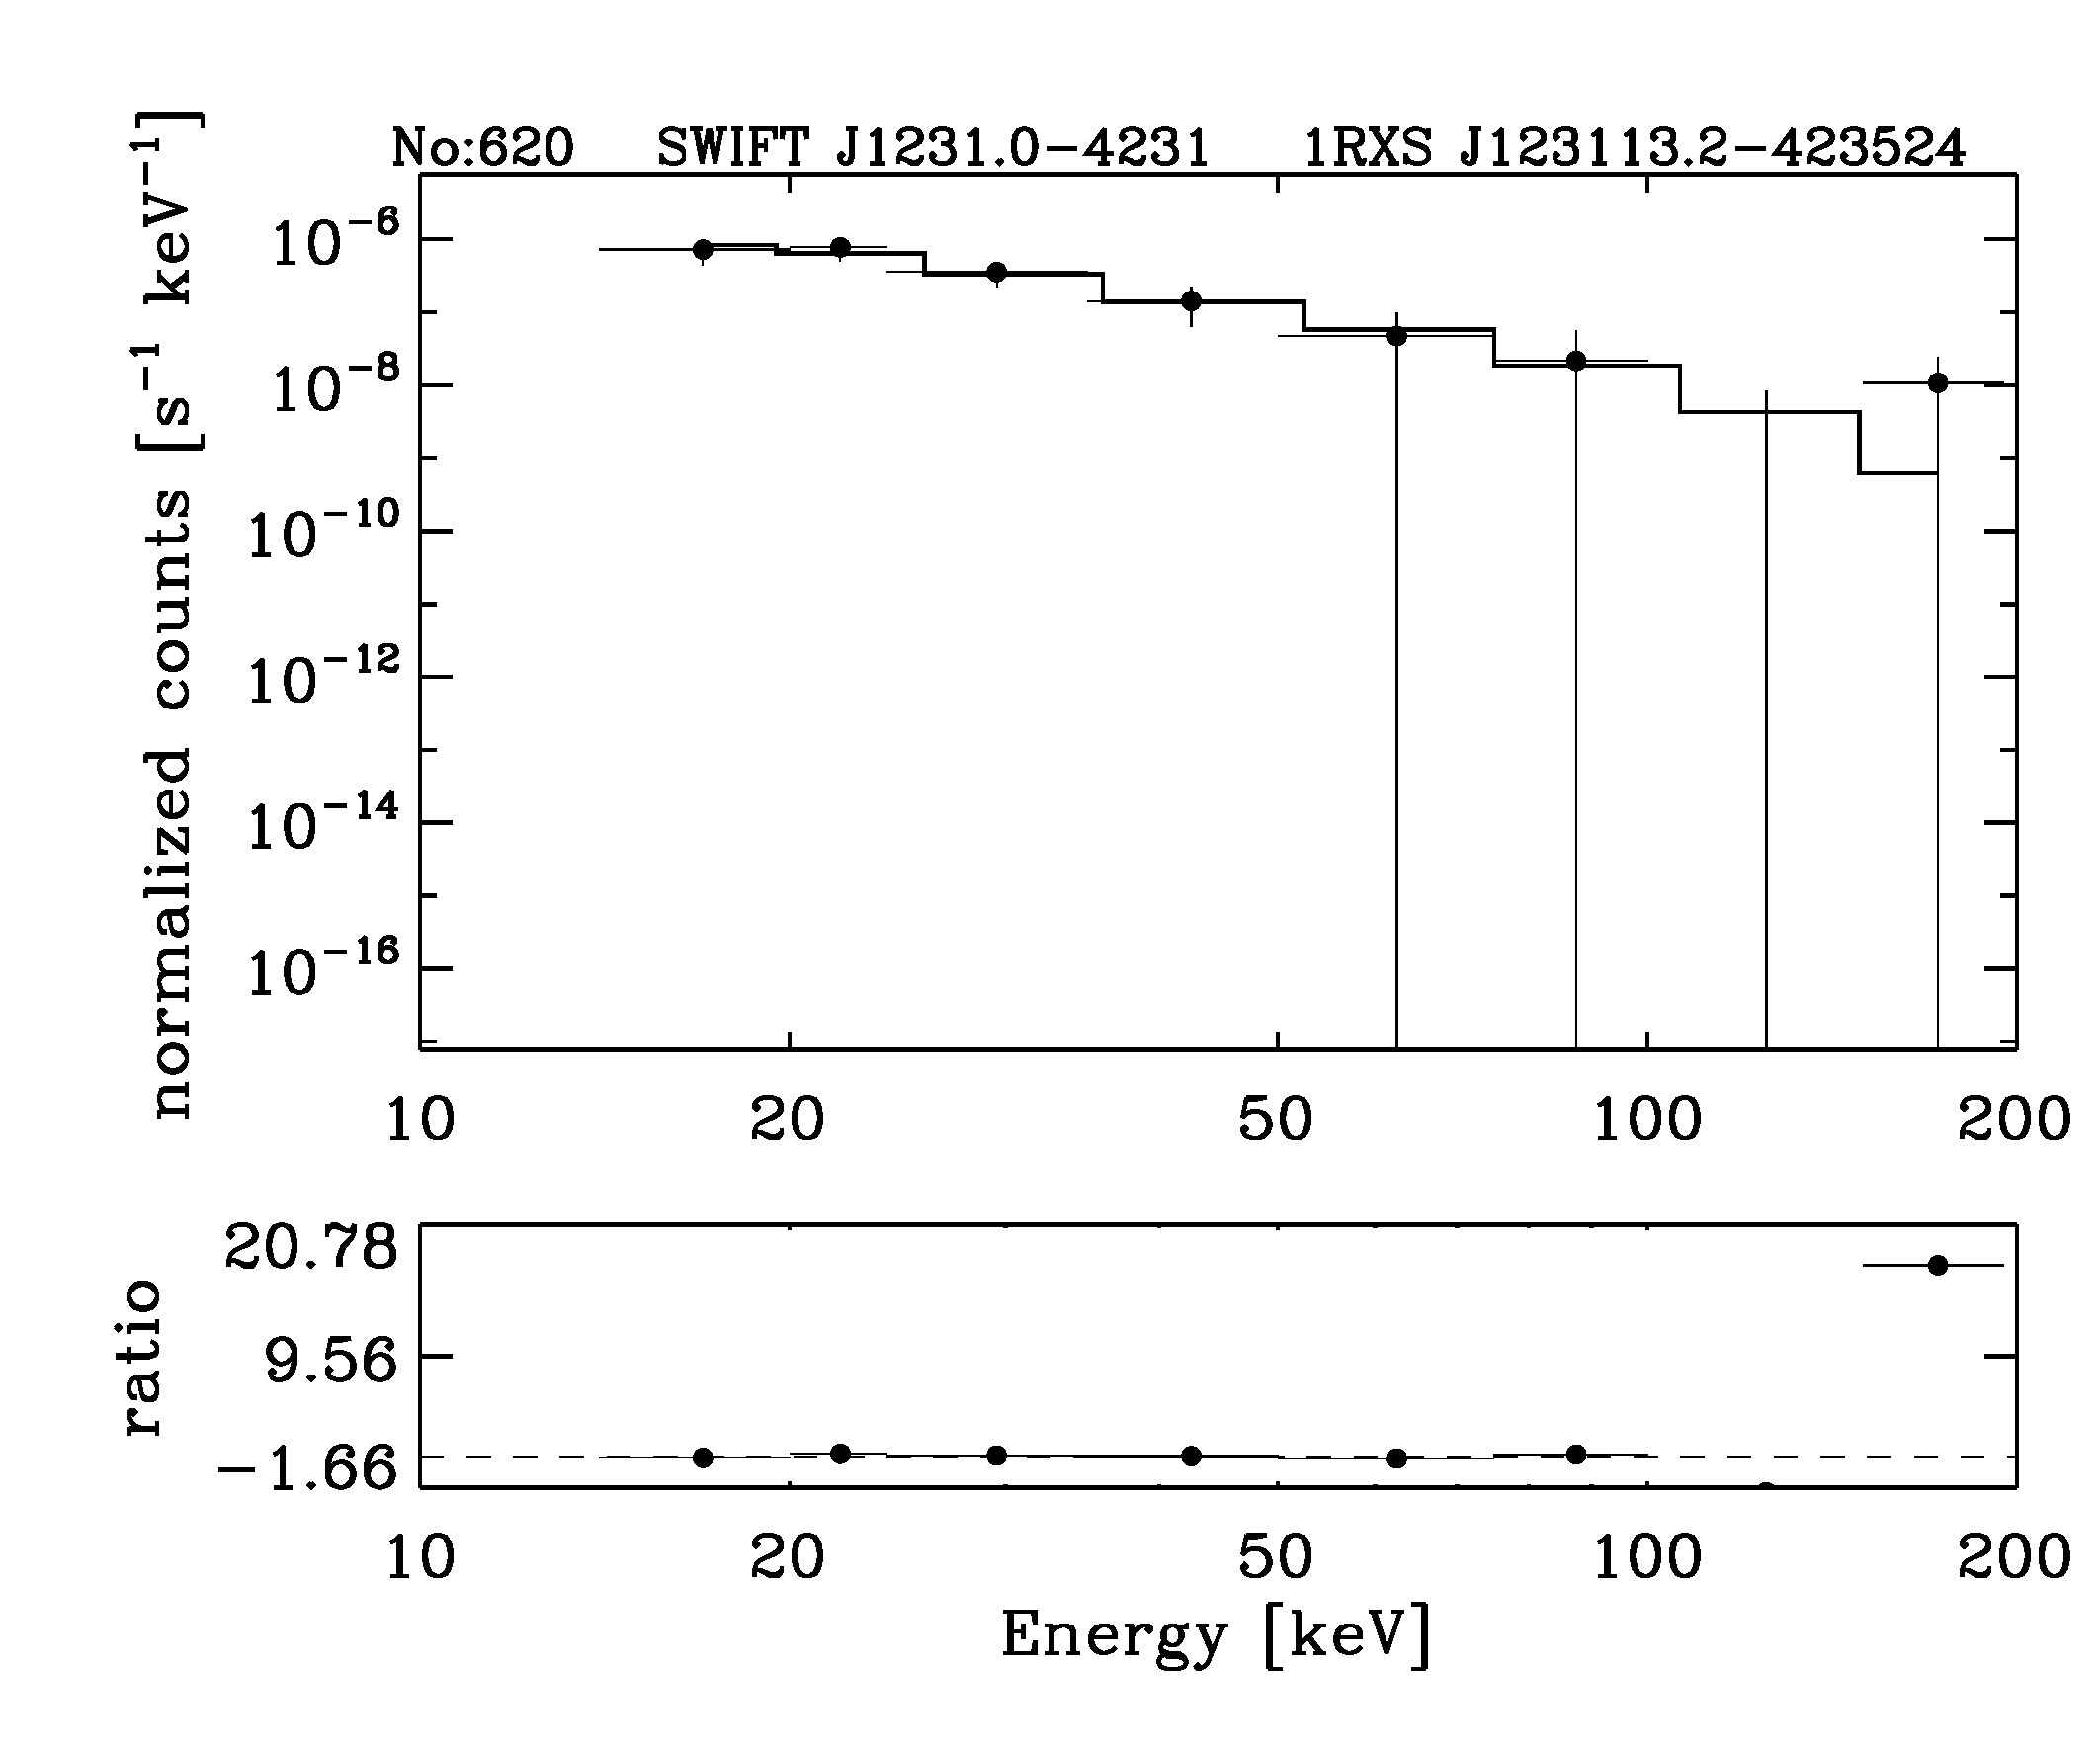 BAT Spectrum for SWIFT J1231.0-4231